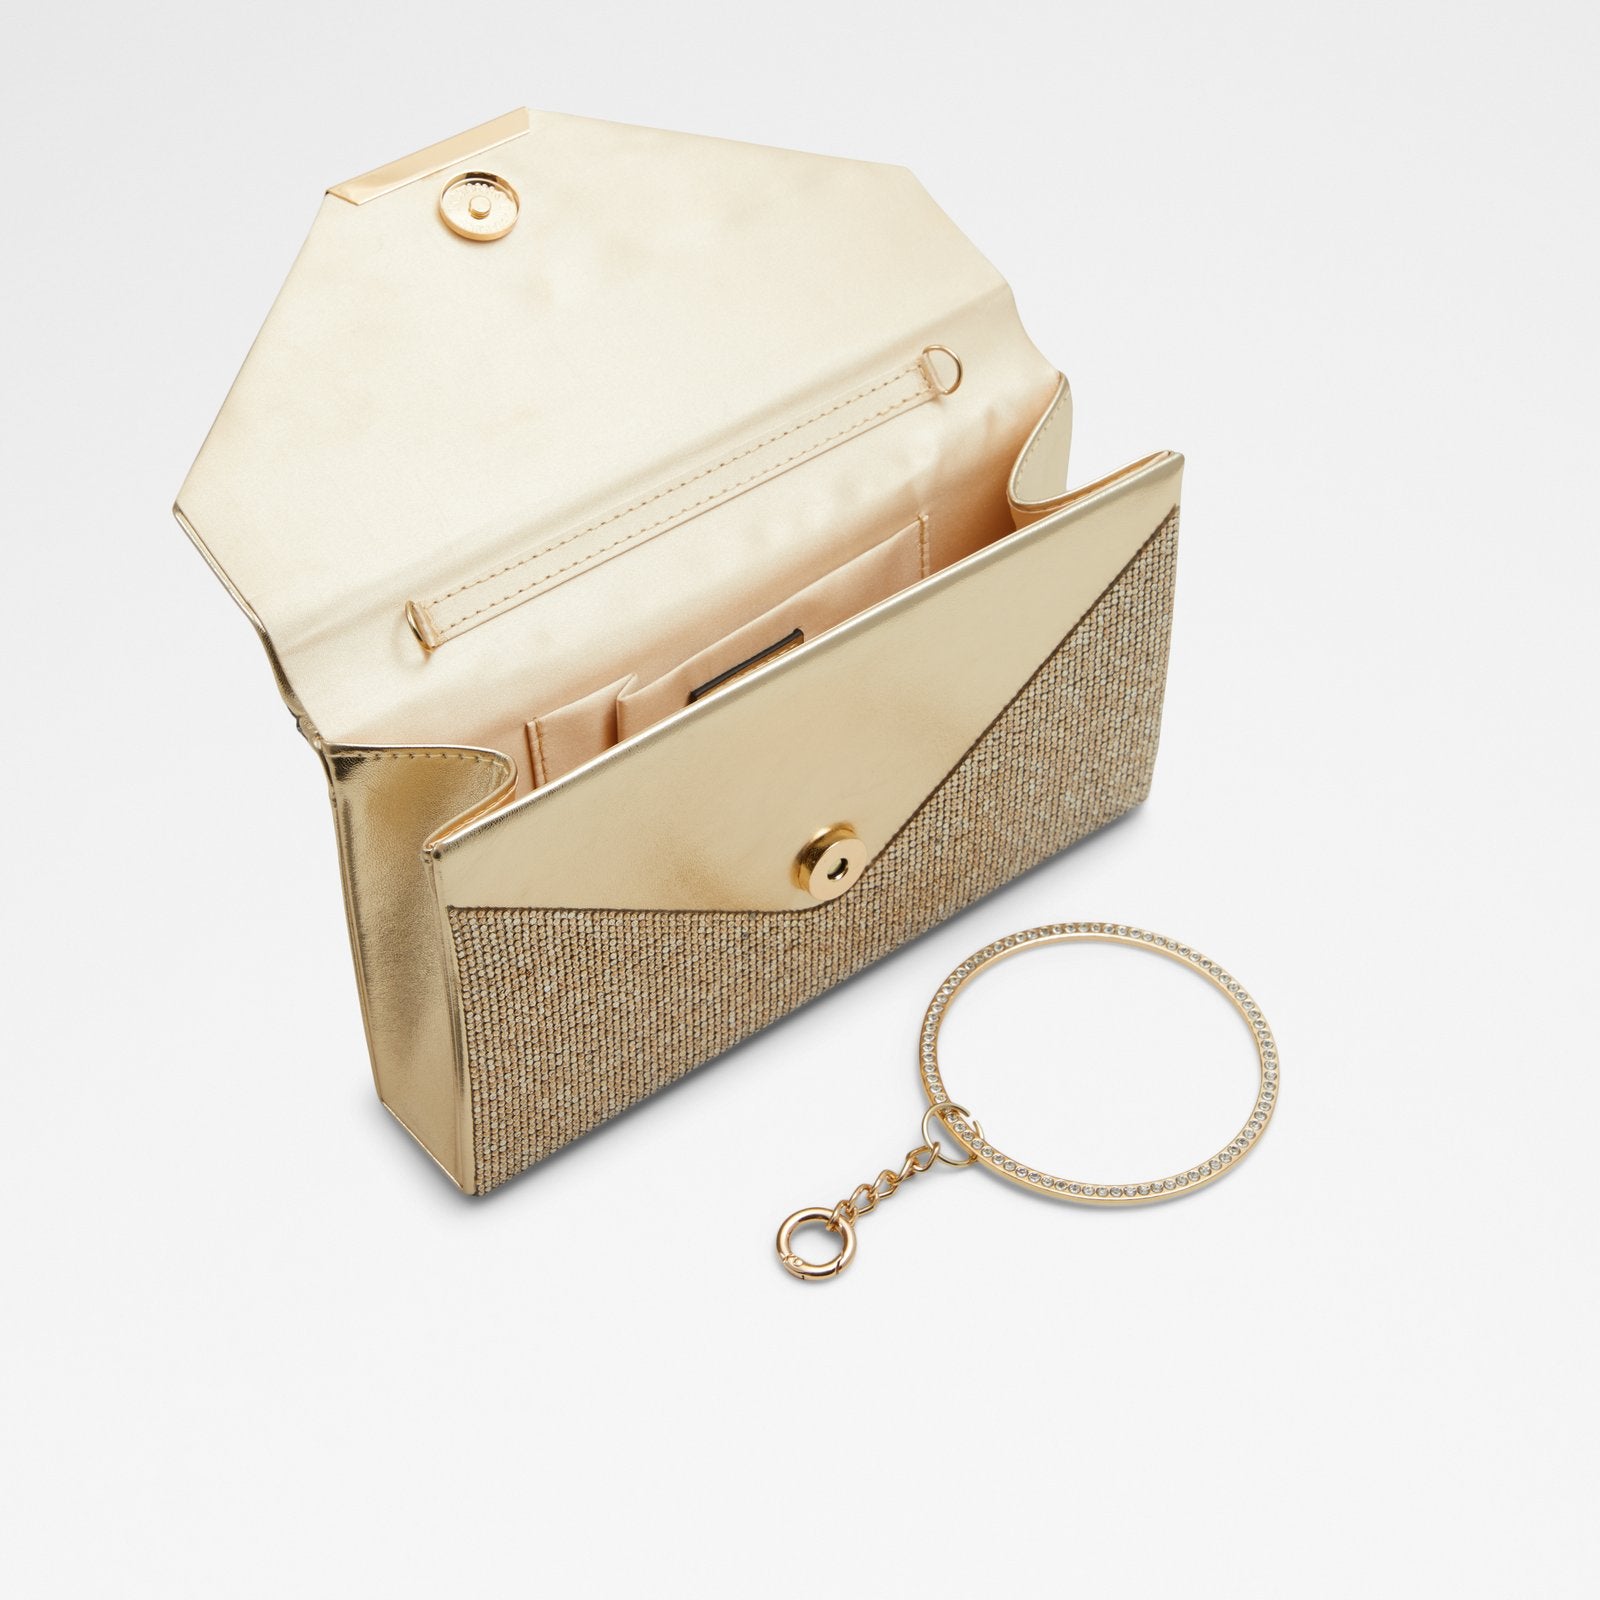 Welter / Clutch Bag Bag - Gold - ALDO KSA